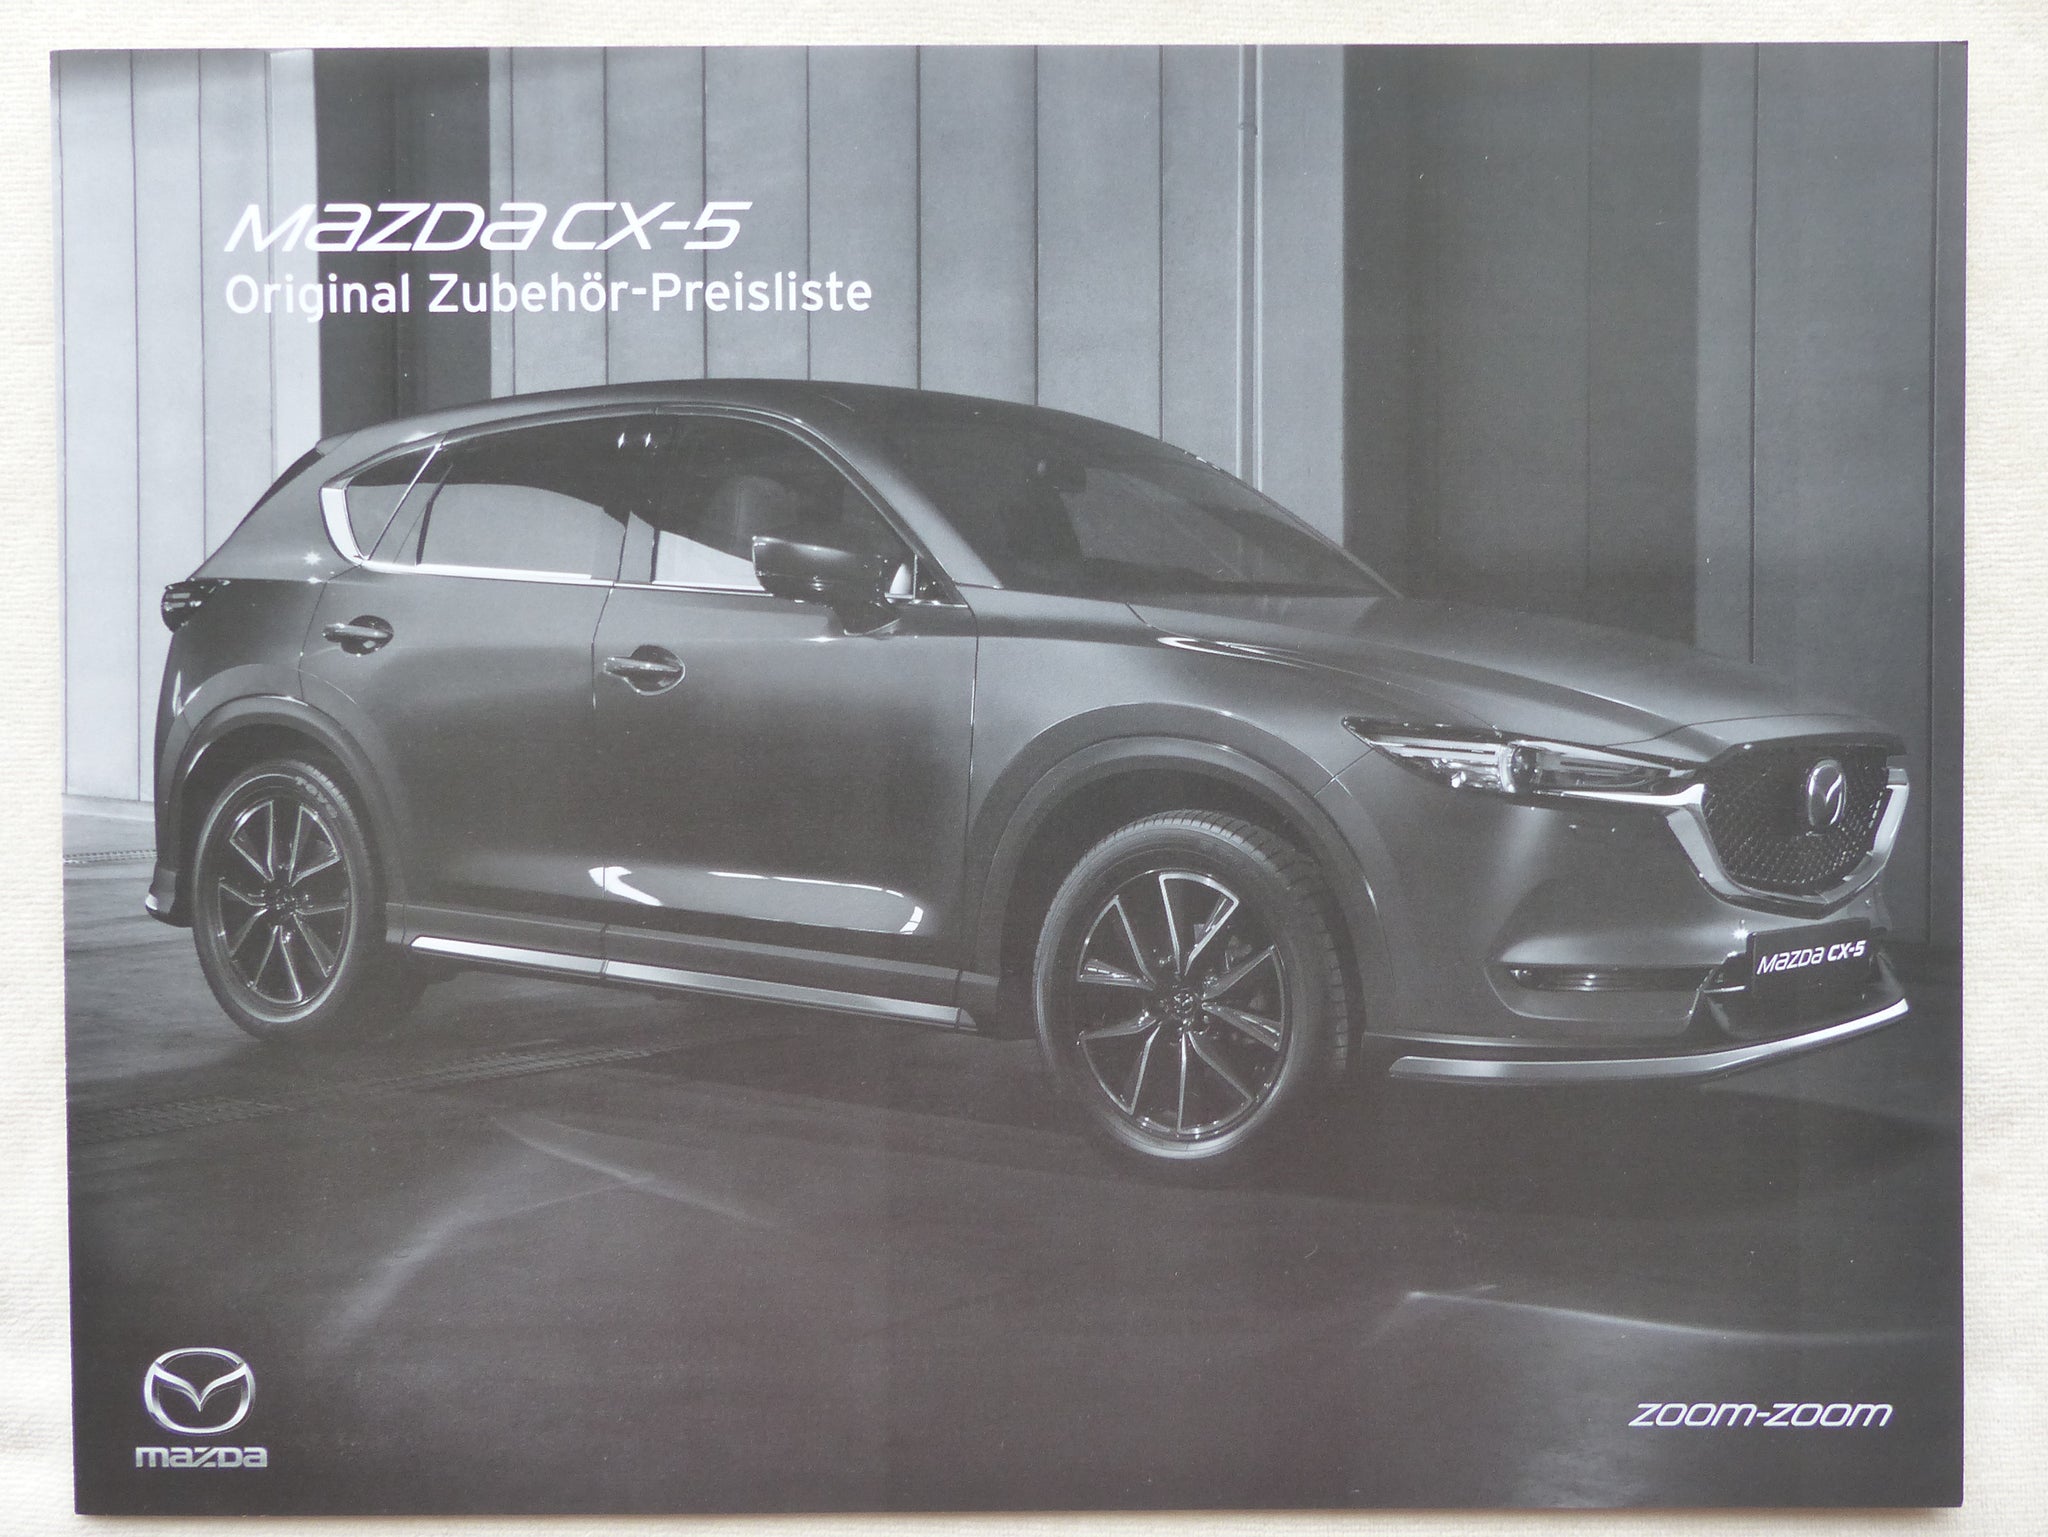 Mazda CX-5 Zubehör MJ 2019 - Prospekt Brochure + Preisliste